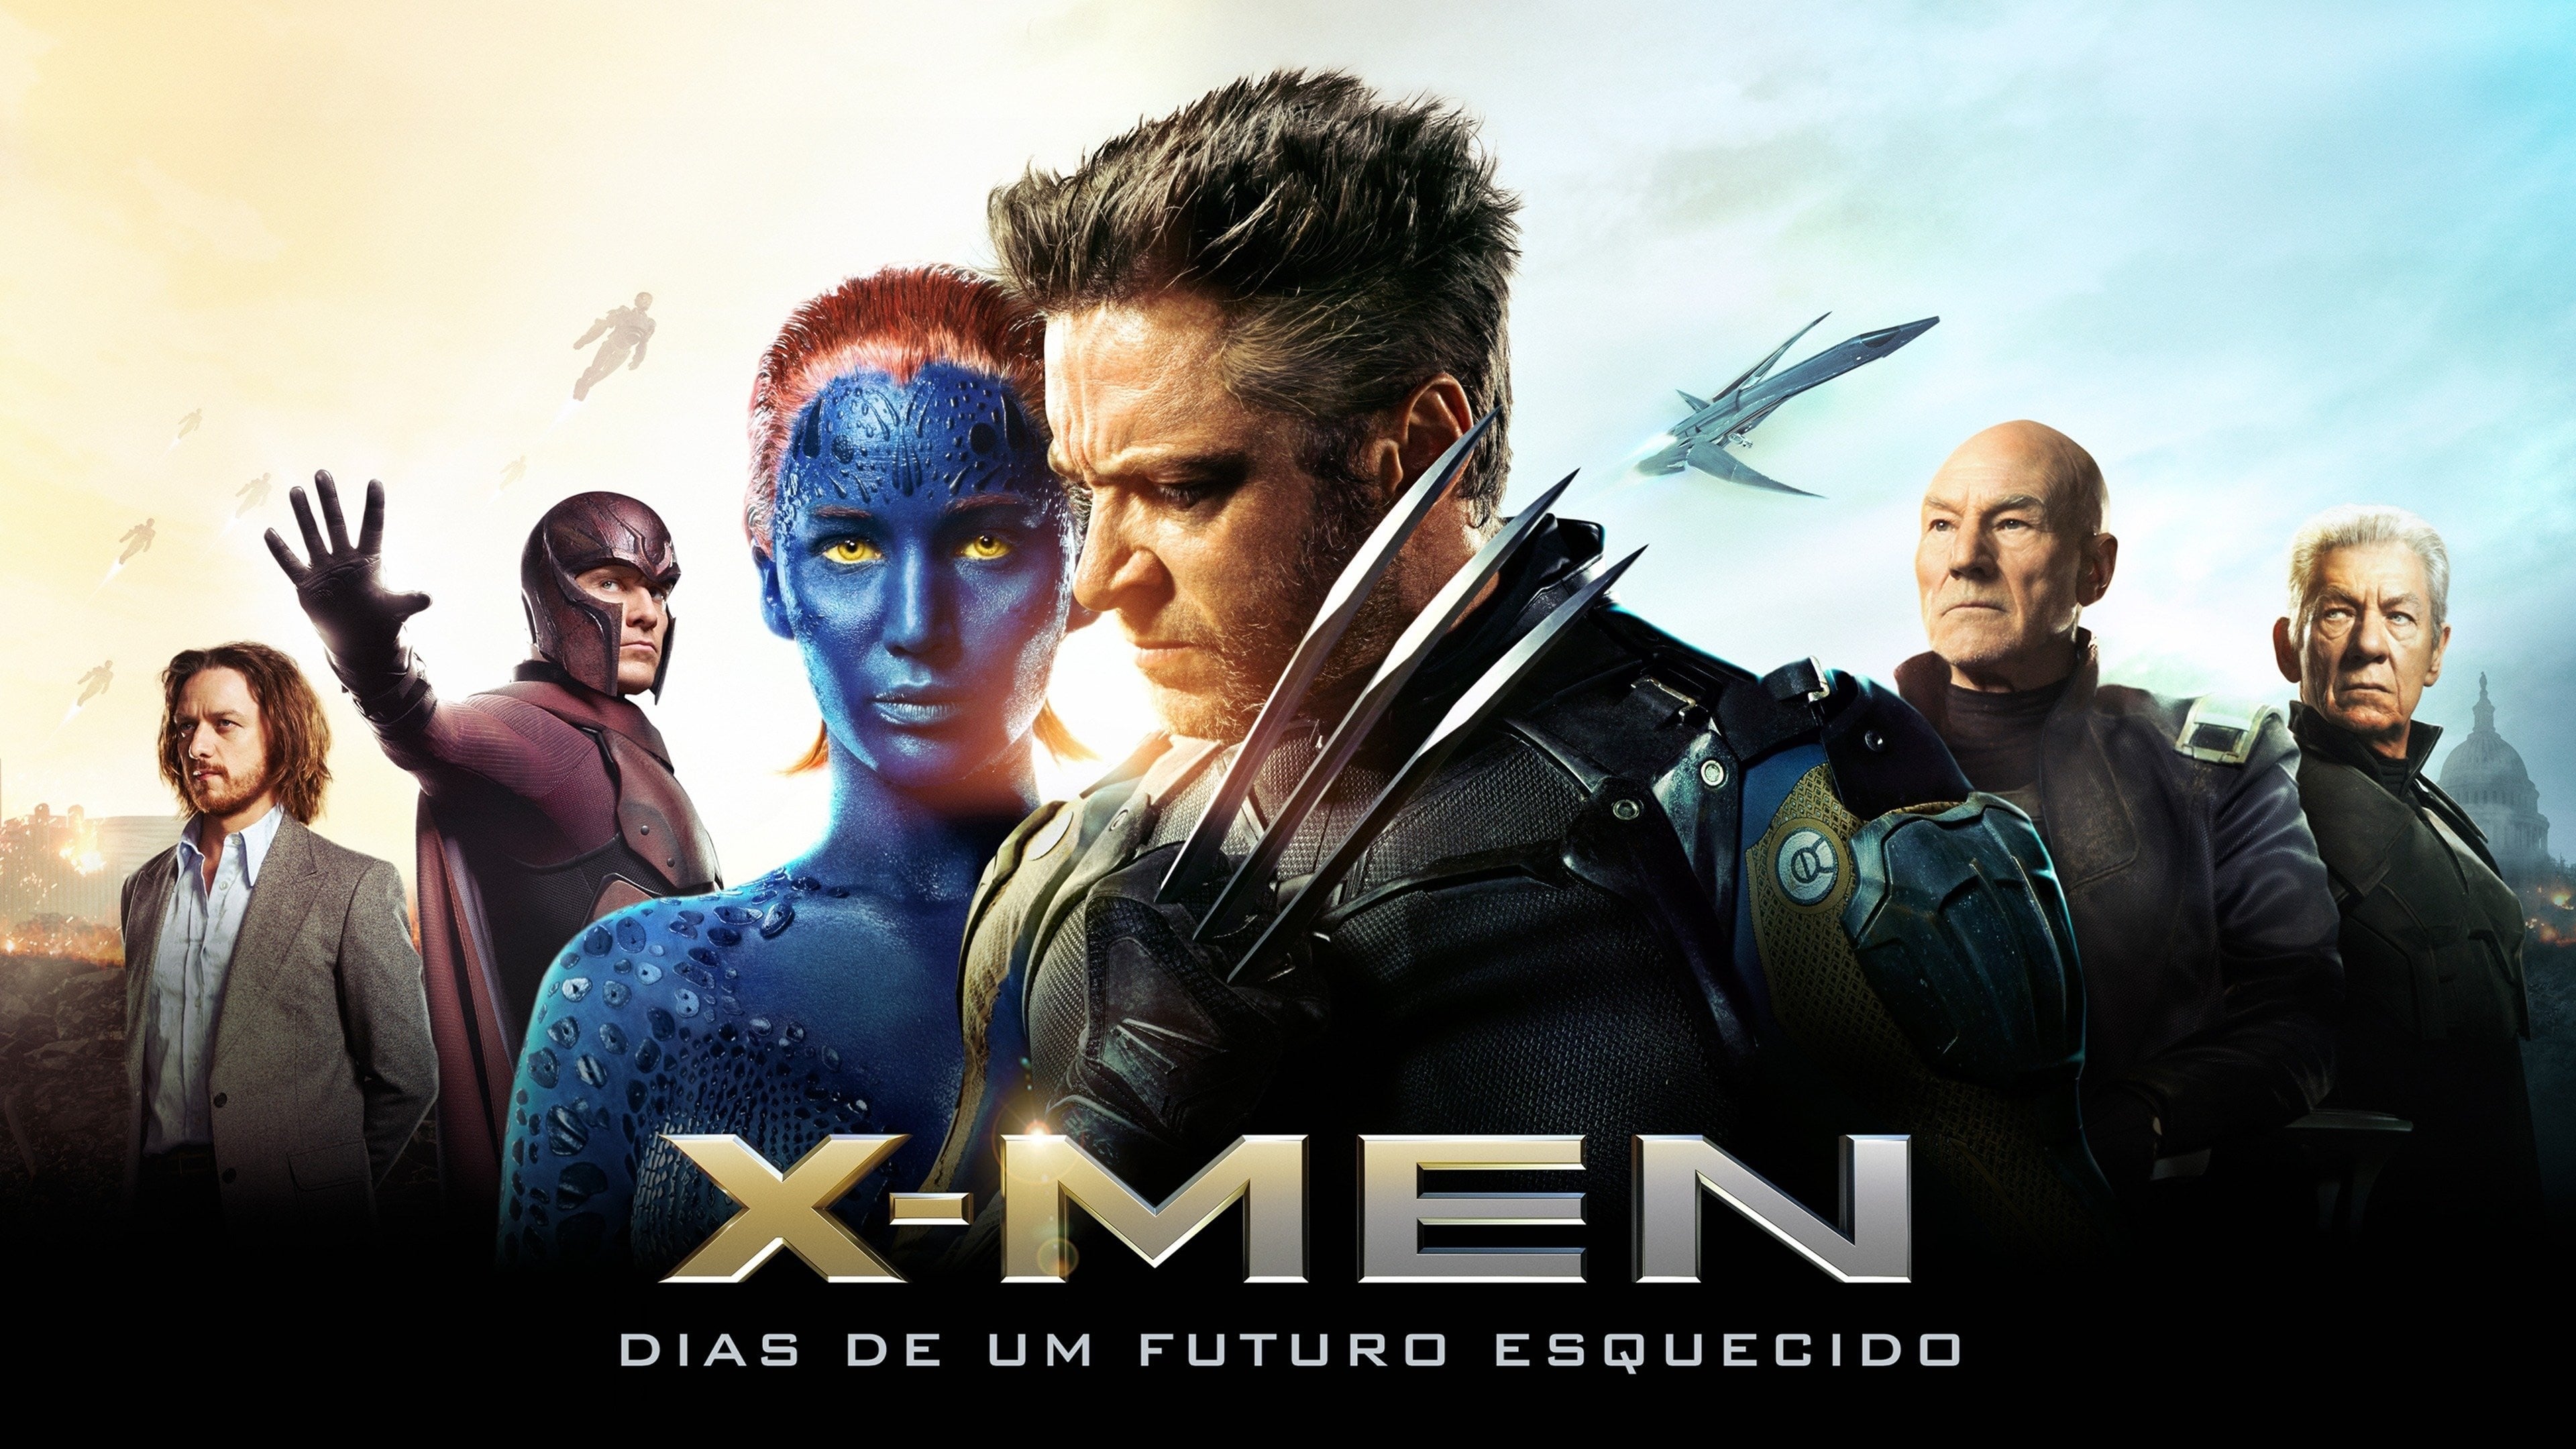 X-Men: Días del futuro pasado